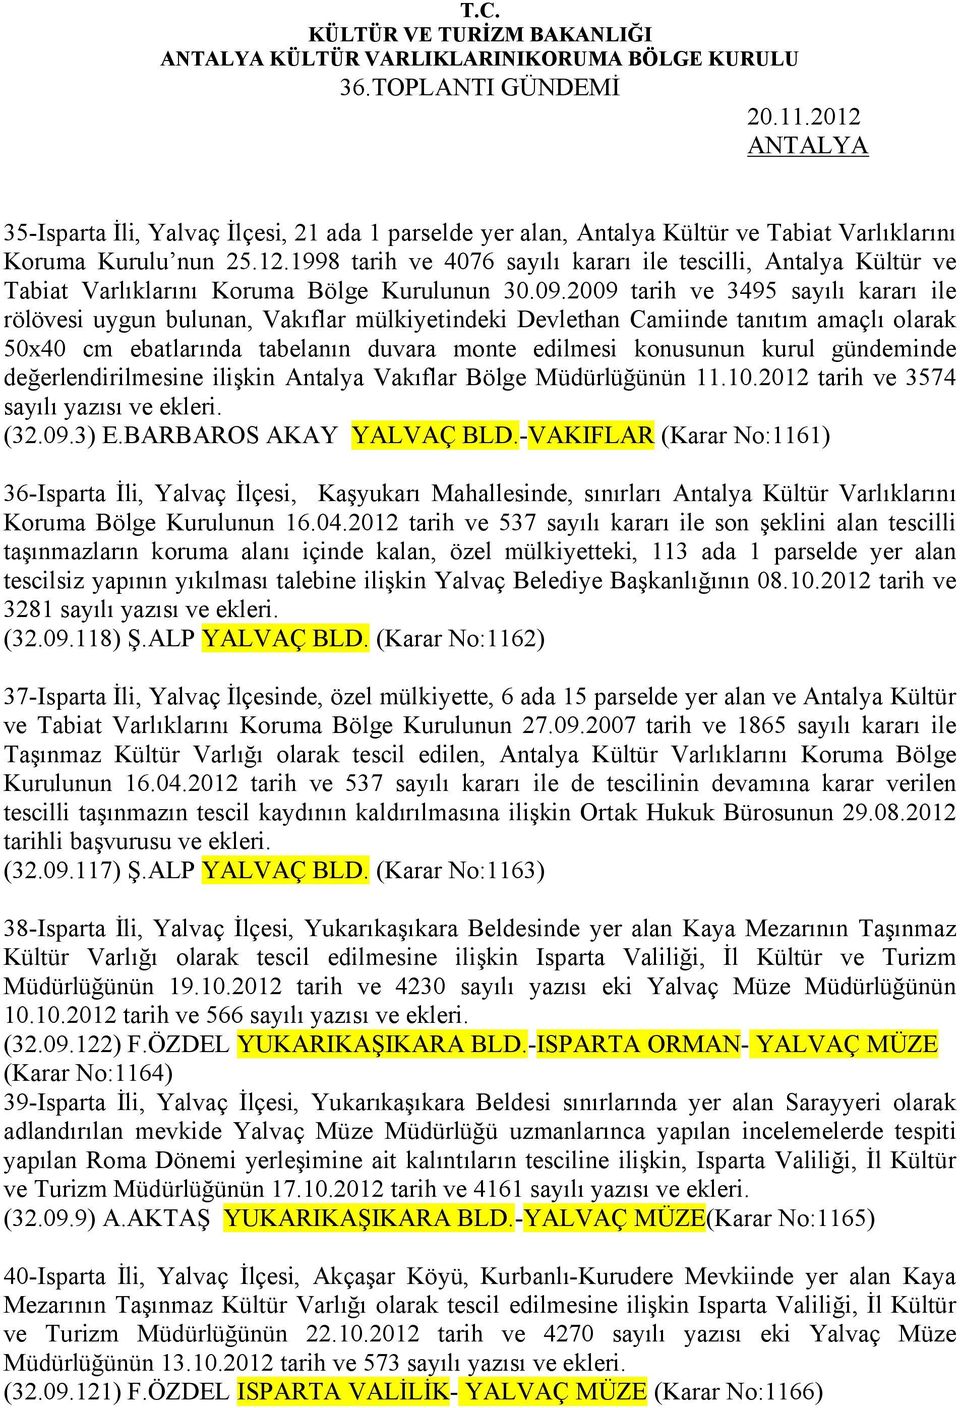 gündeminde değerlendirilmesine ilişkin Antalya Vakıflar Bölge Müdürlüğünün 11.10.2012 tarih ve 3574 sayılı yazısı ve ekleri. (32.09.3) E.BARBAROS AKAY YALVAÇ BLD.